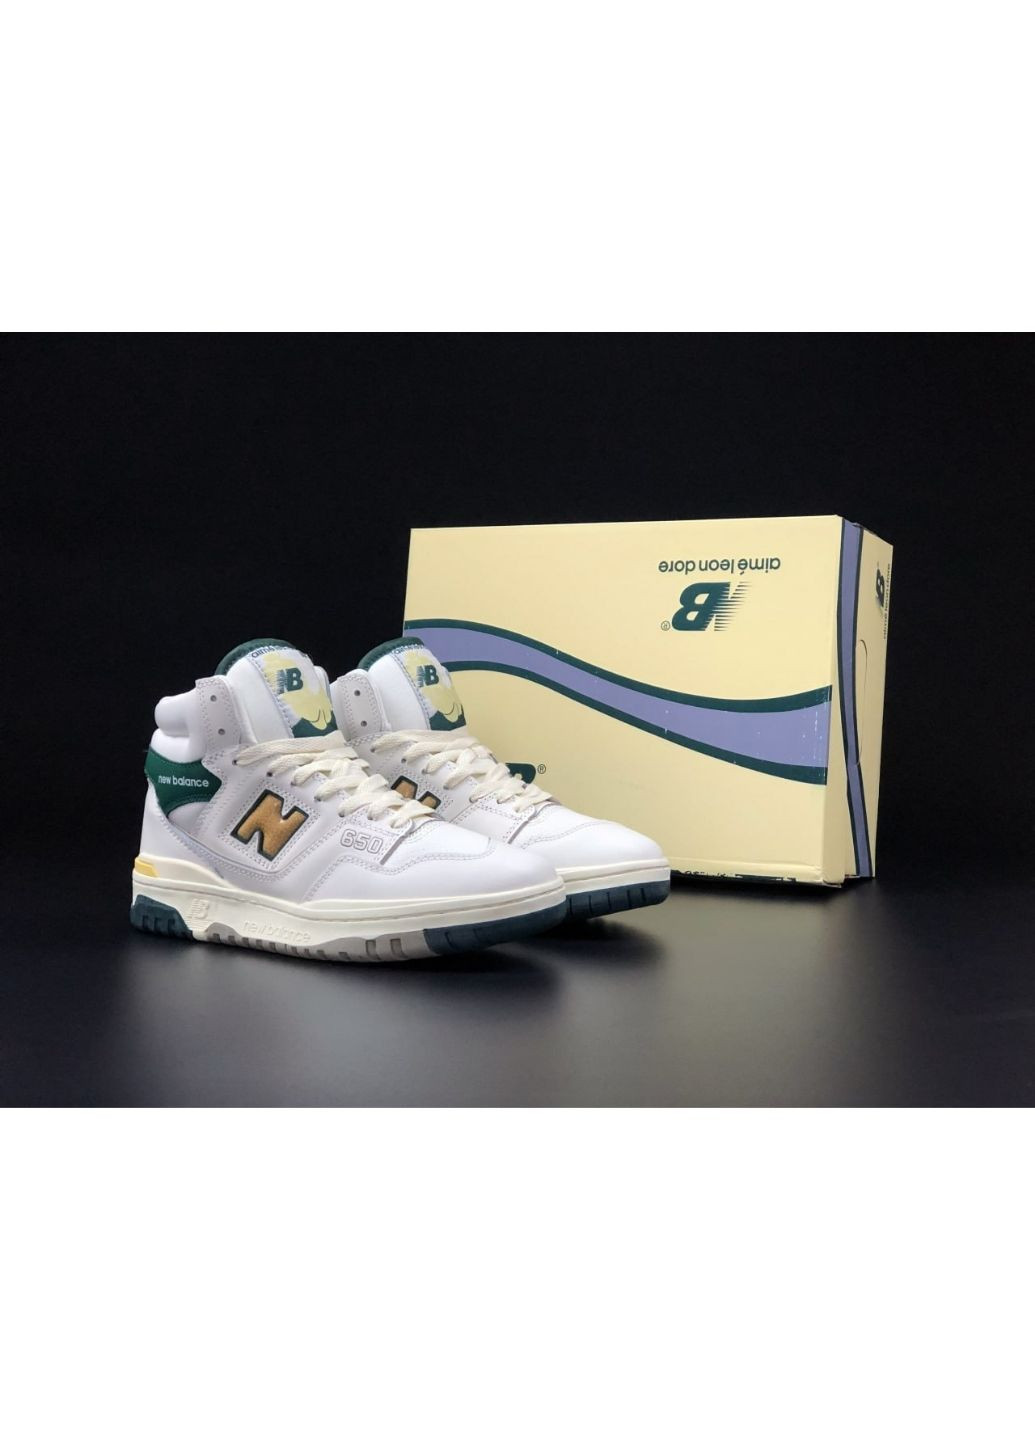 Білі Осінні чоловічі кросівки білі із зеленим\жовті «no name» New Balance 650